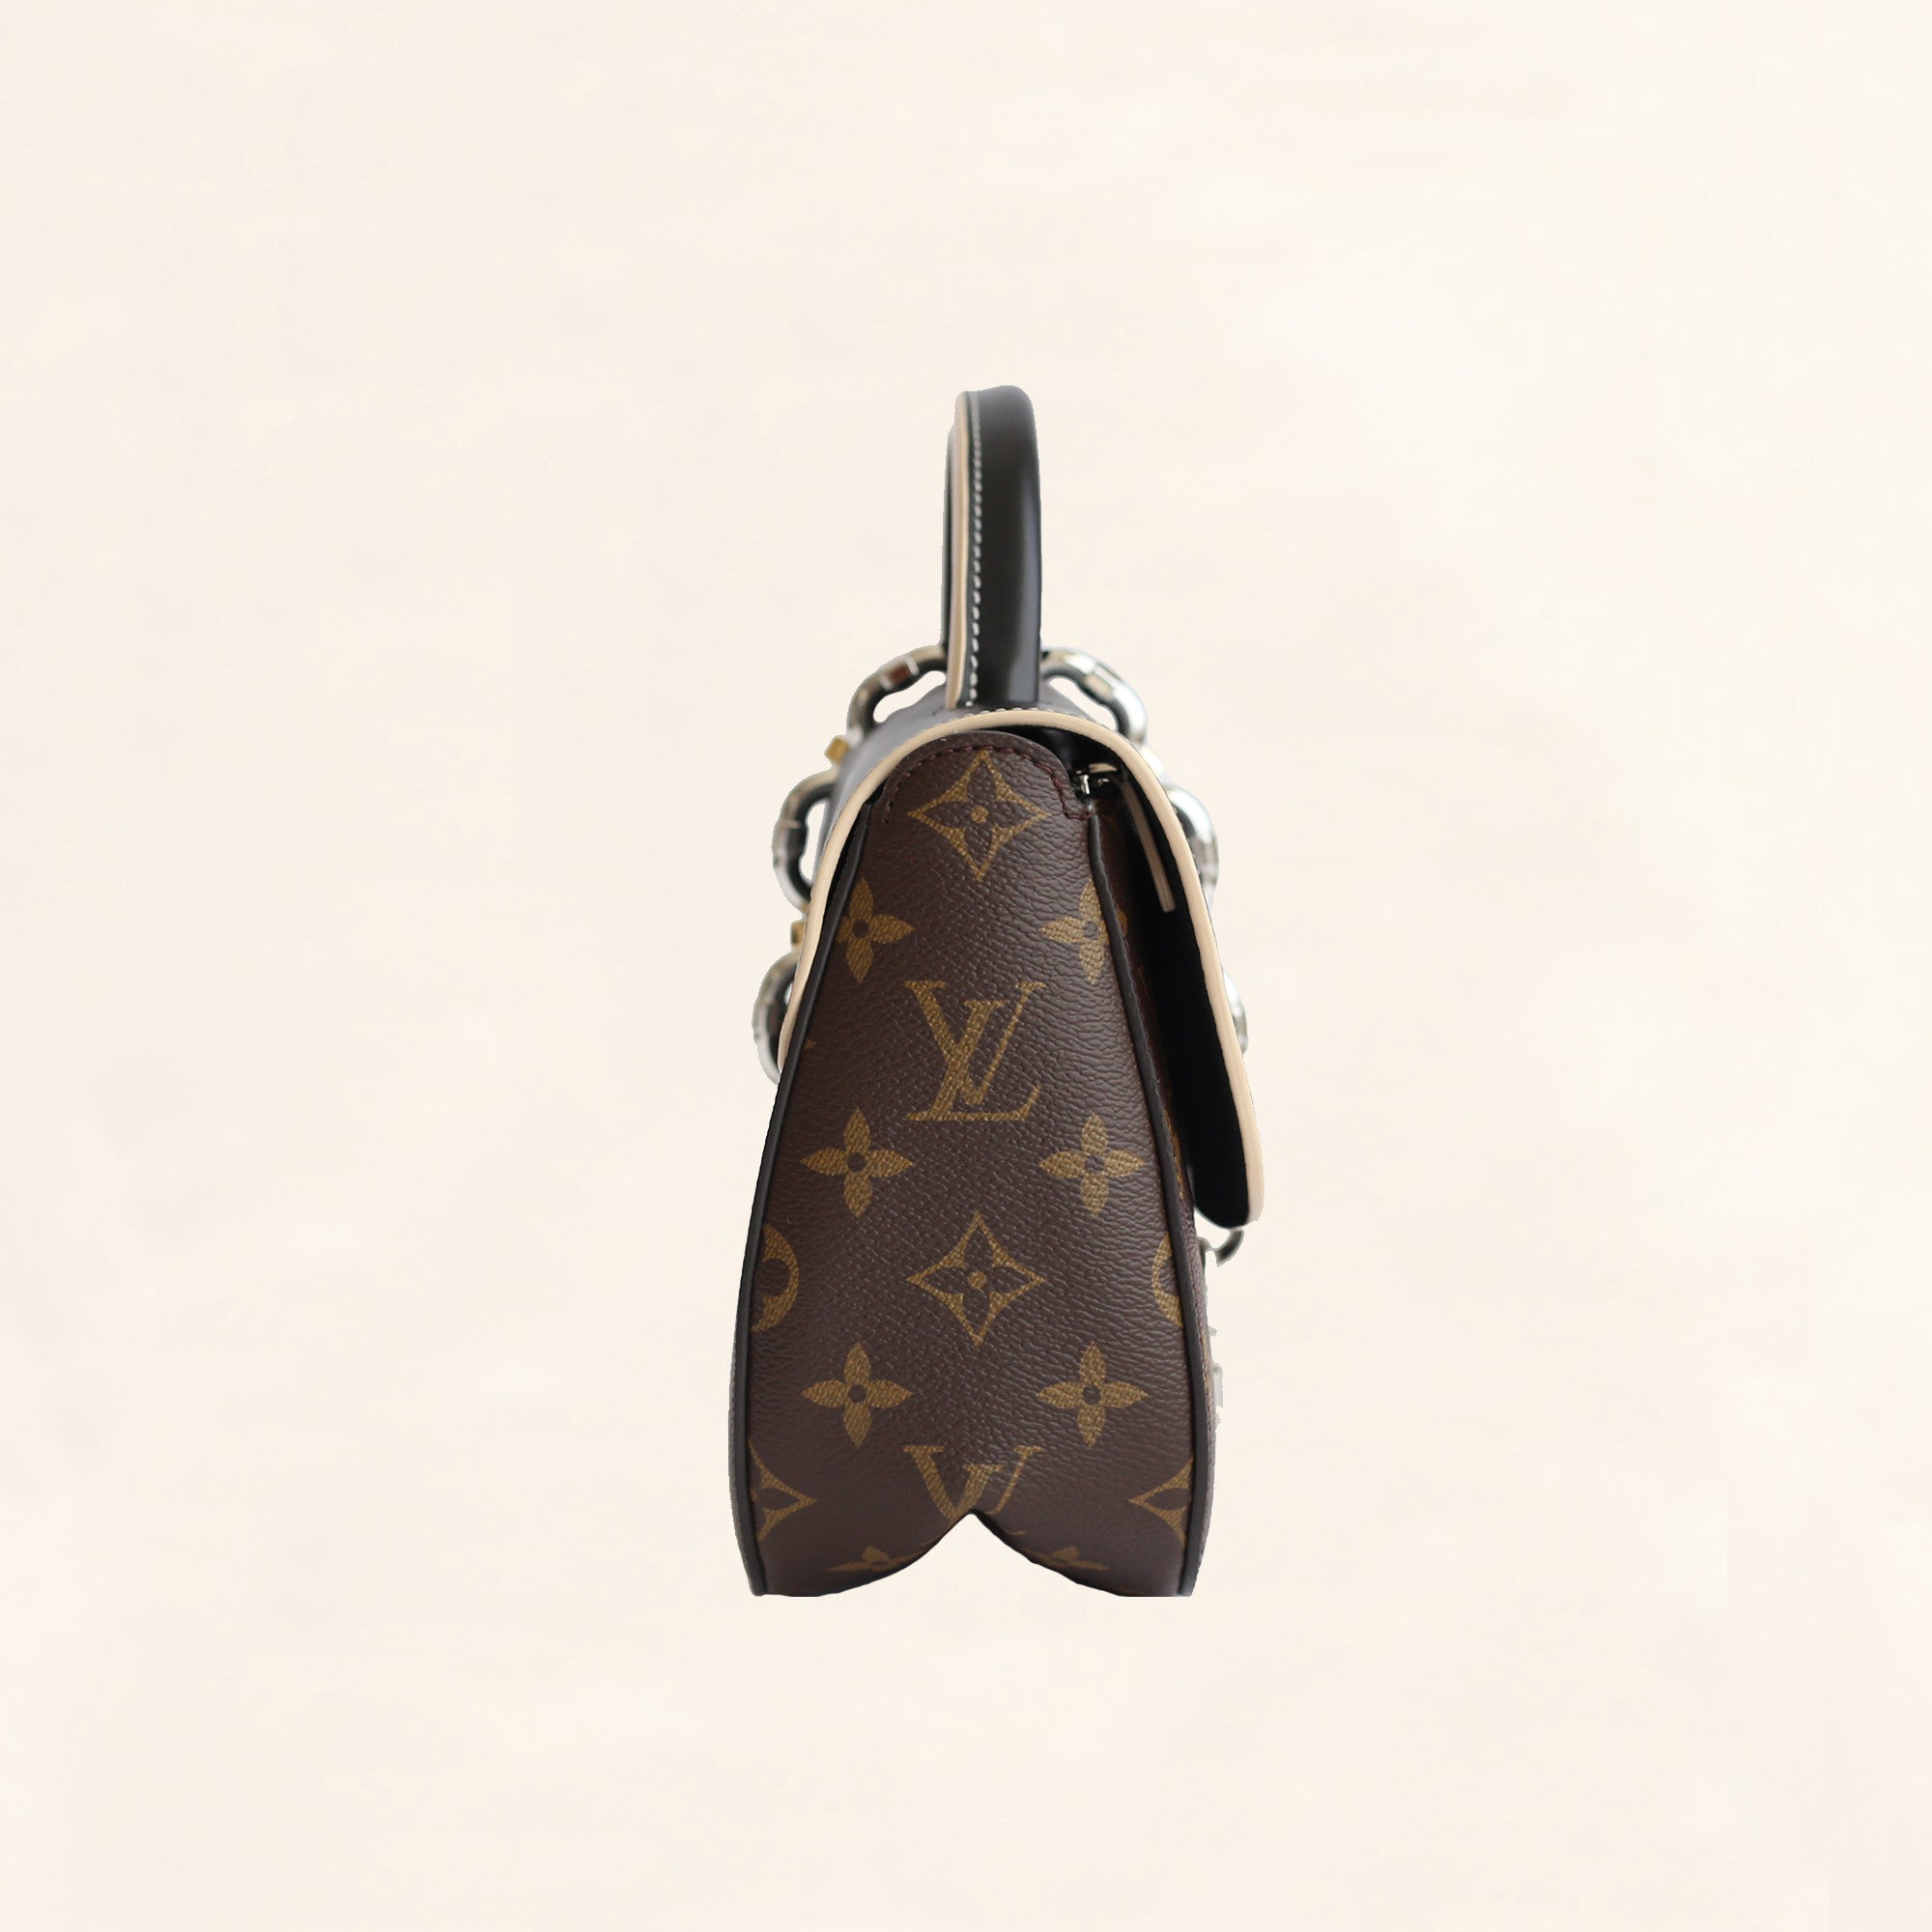 louis vuitton handbag with gold chain